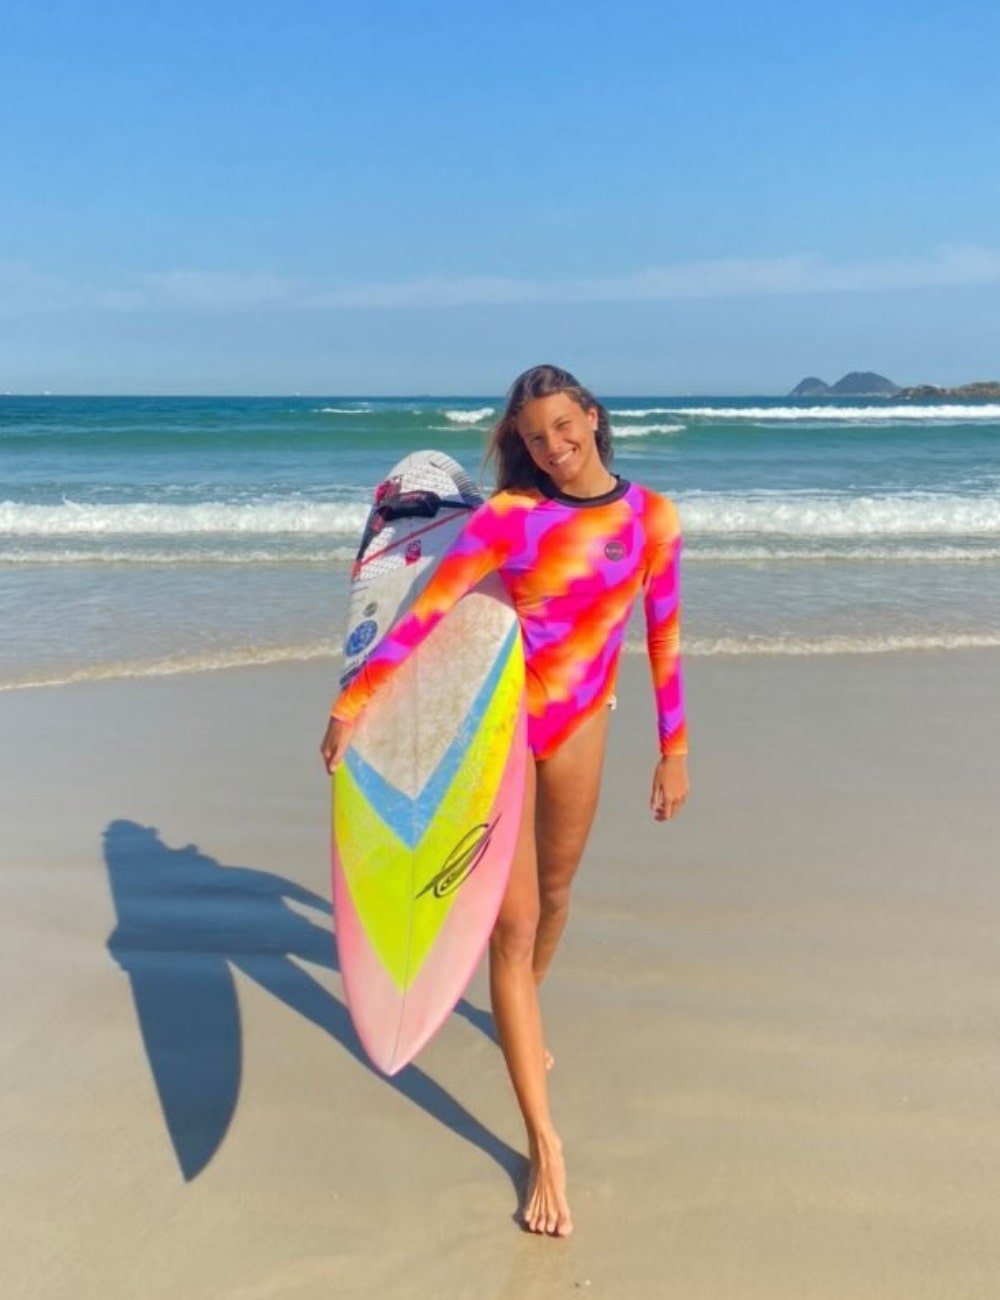 Somos 1 - maiô de manga longa estampado e colorido - tendências de verão - Verão - mulher andando na praia com uma prancha de surfe na mão - https://stealthelook.com.br